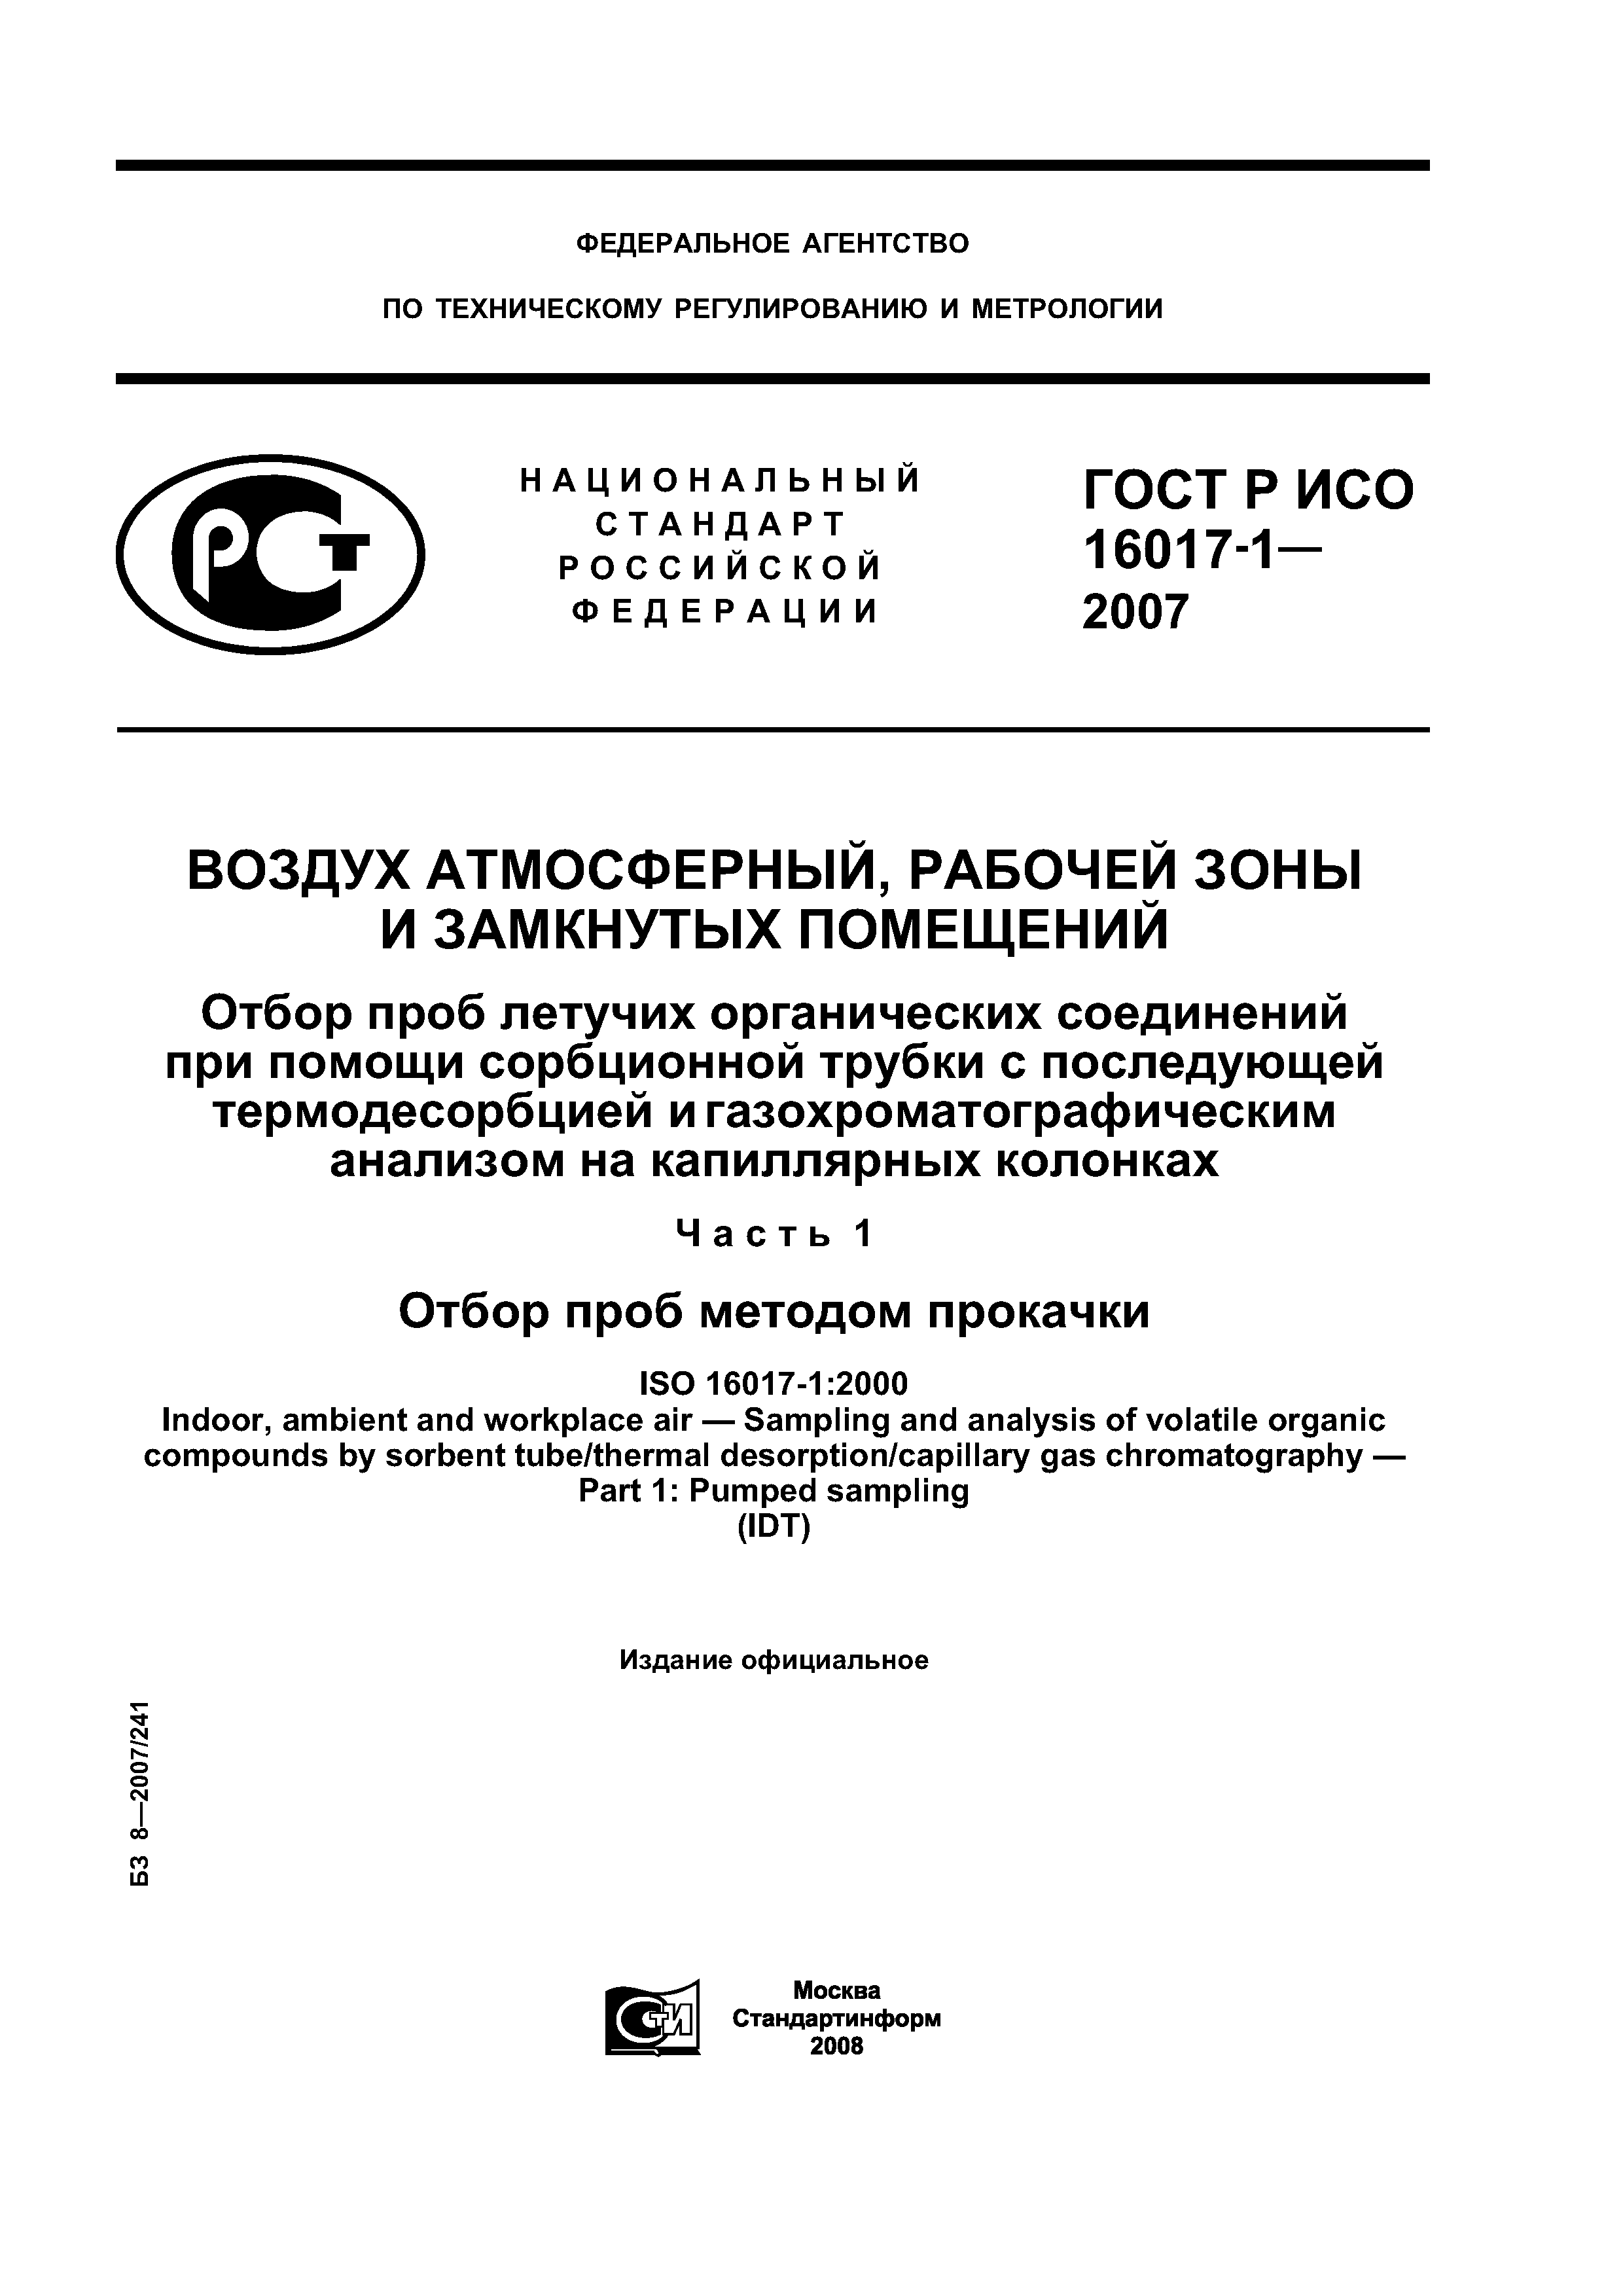 ГОСТ Р ИСО 16017-1-2007